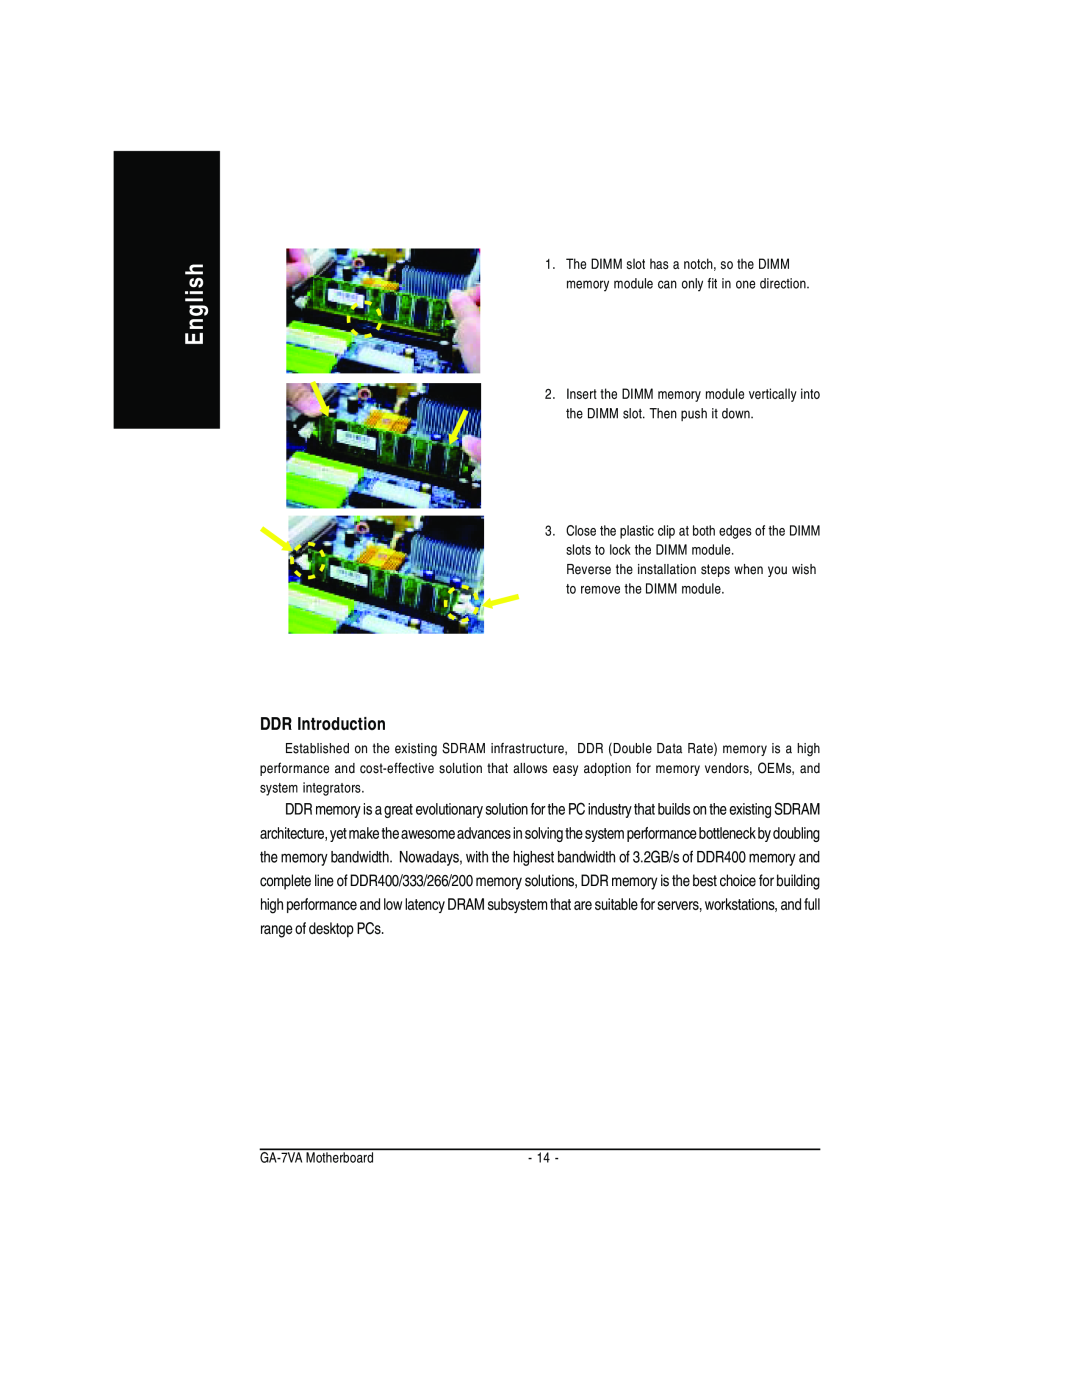 Gigabyte GA-7VA manual English, DDR Introduction 